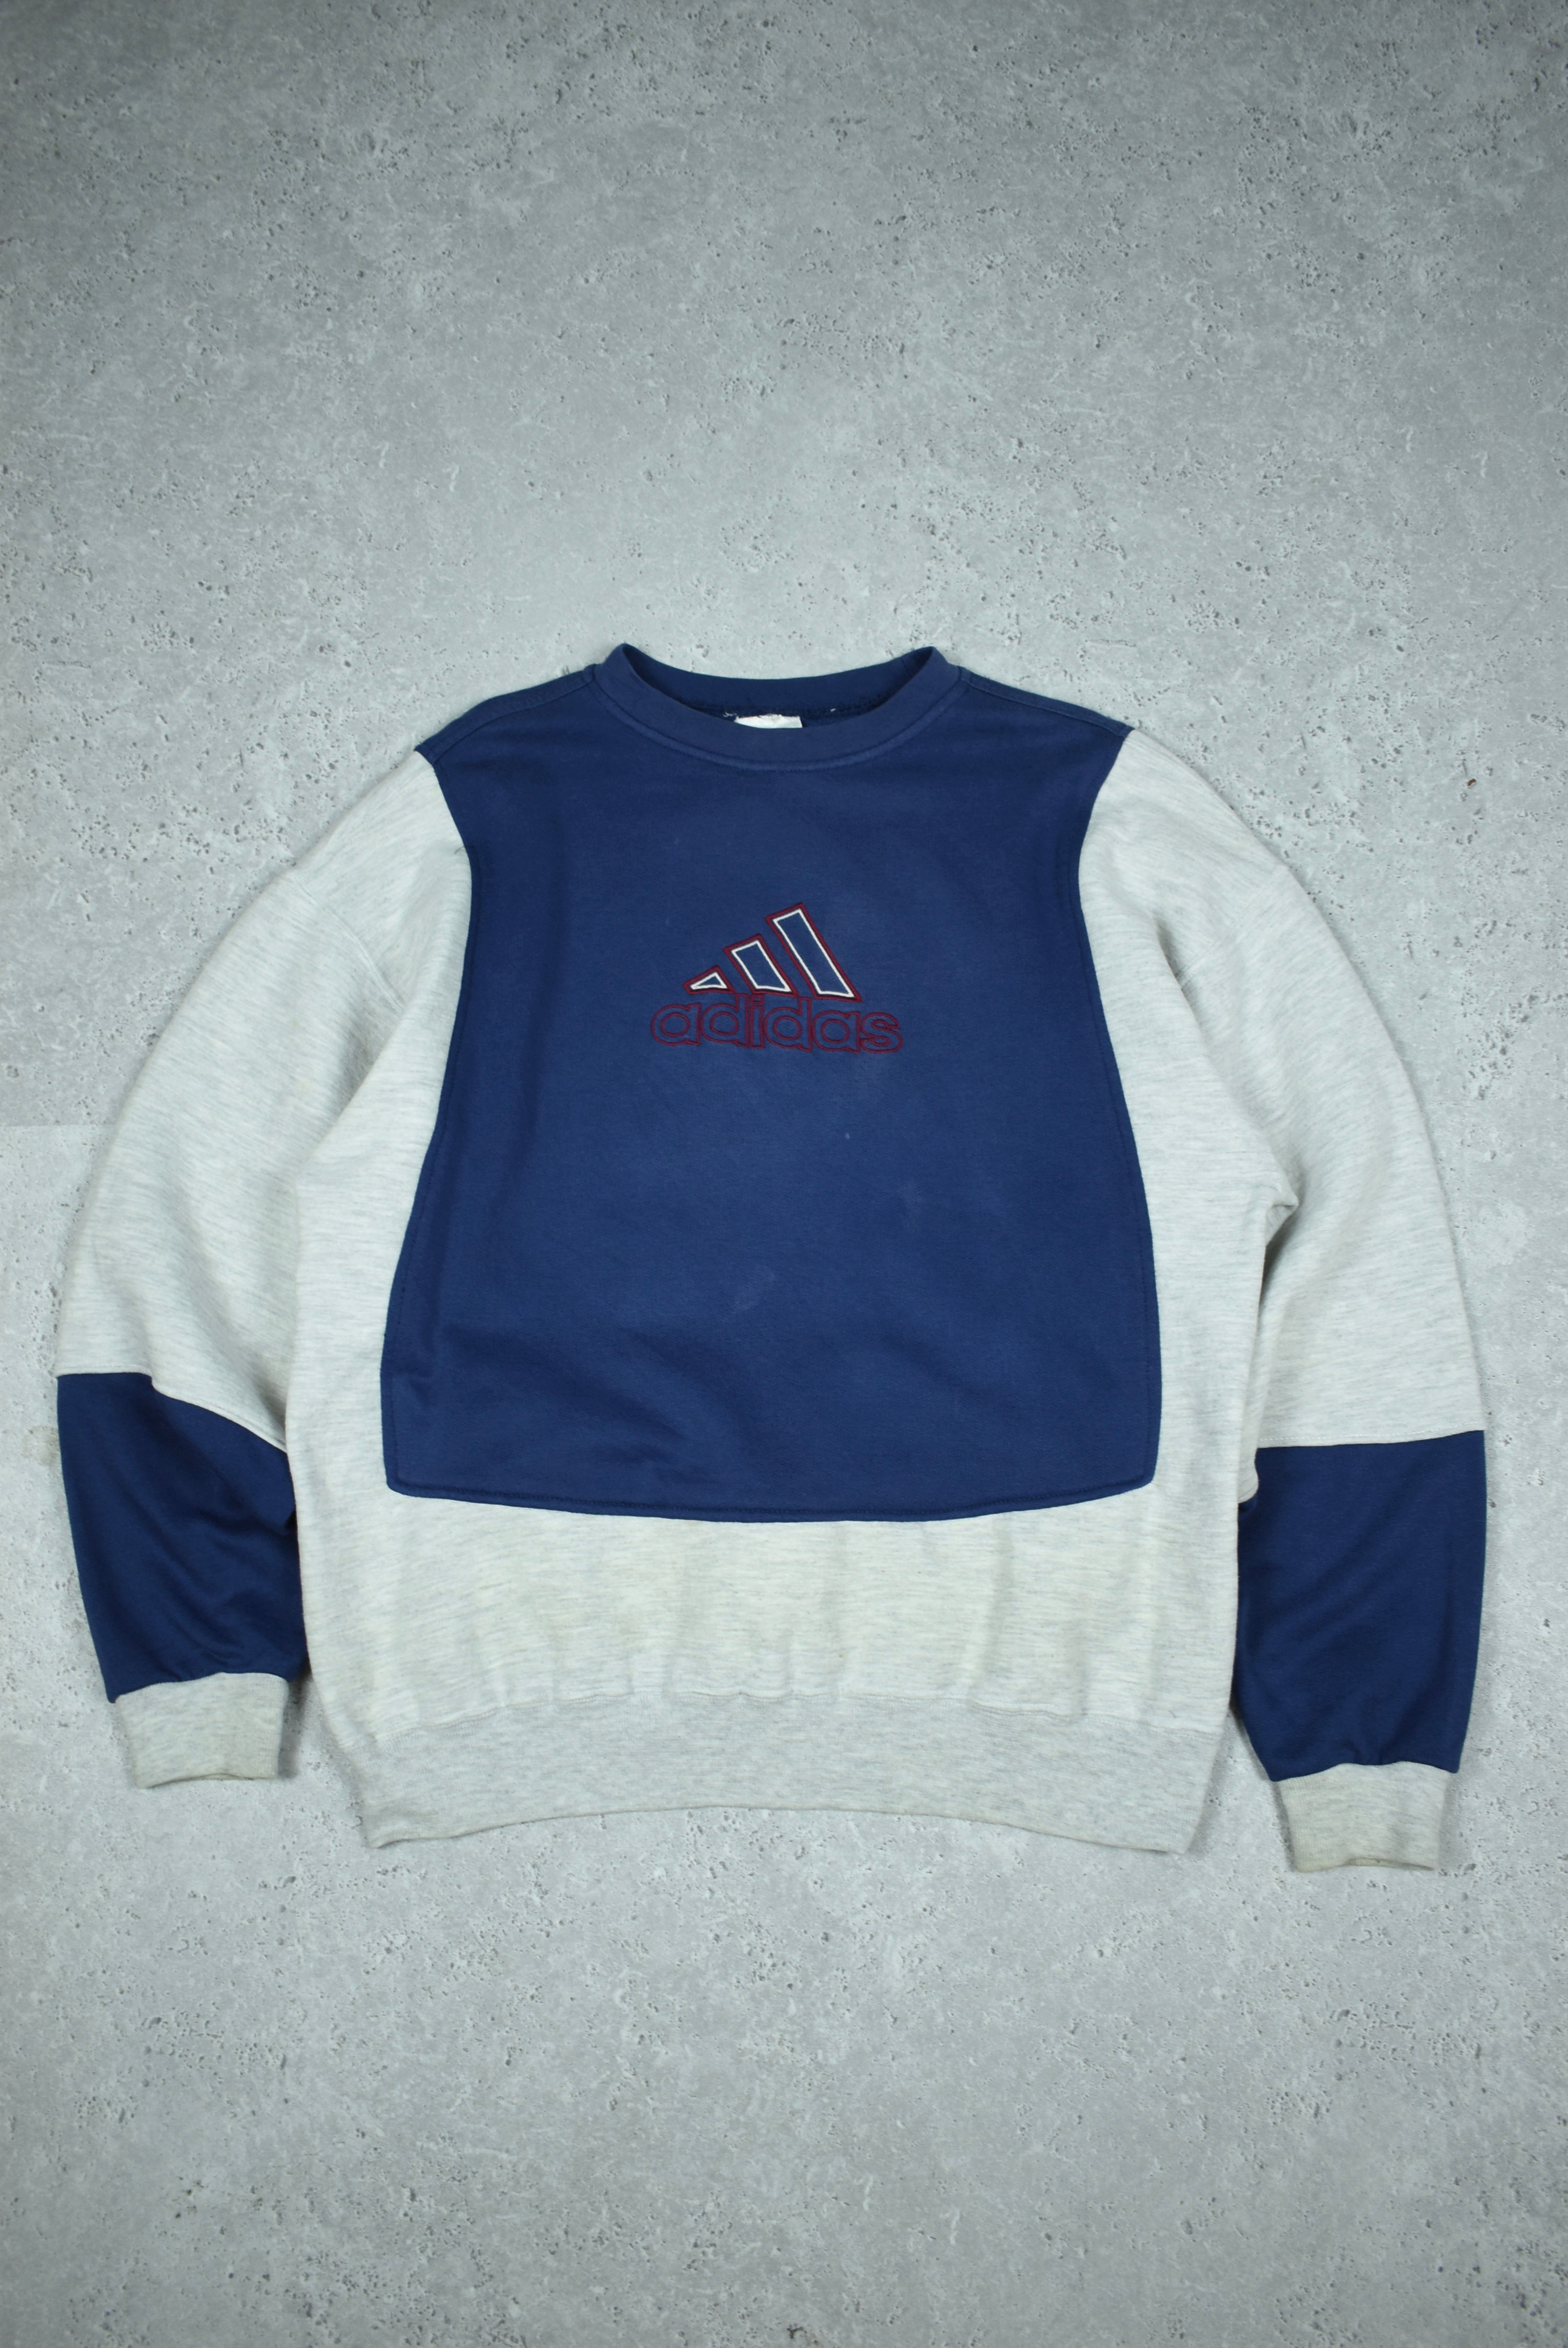 Vintage Adidas Embroidery Rework Sweatshirt Large